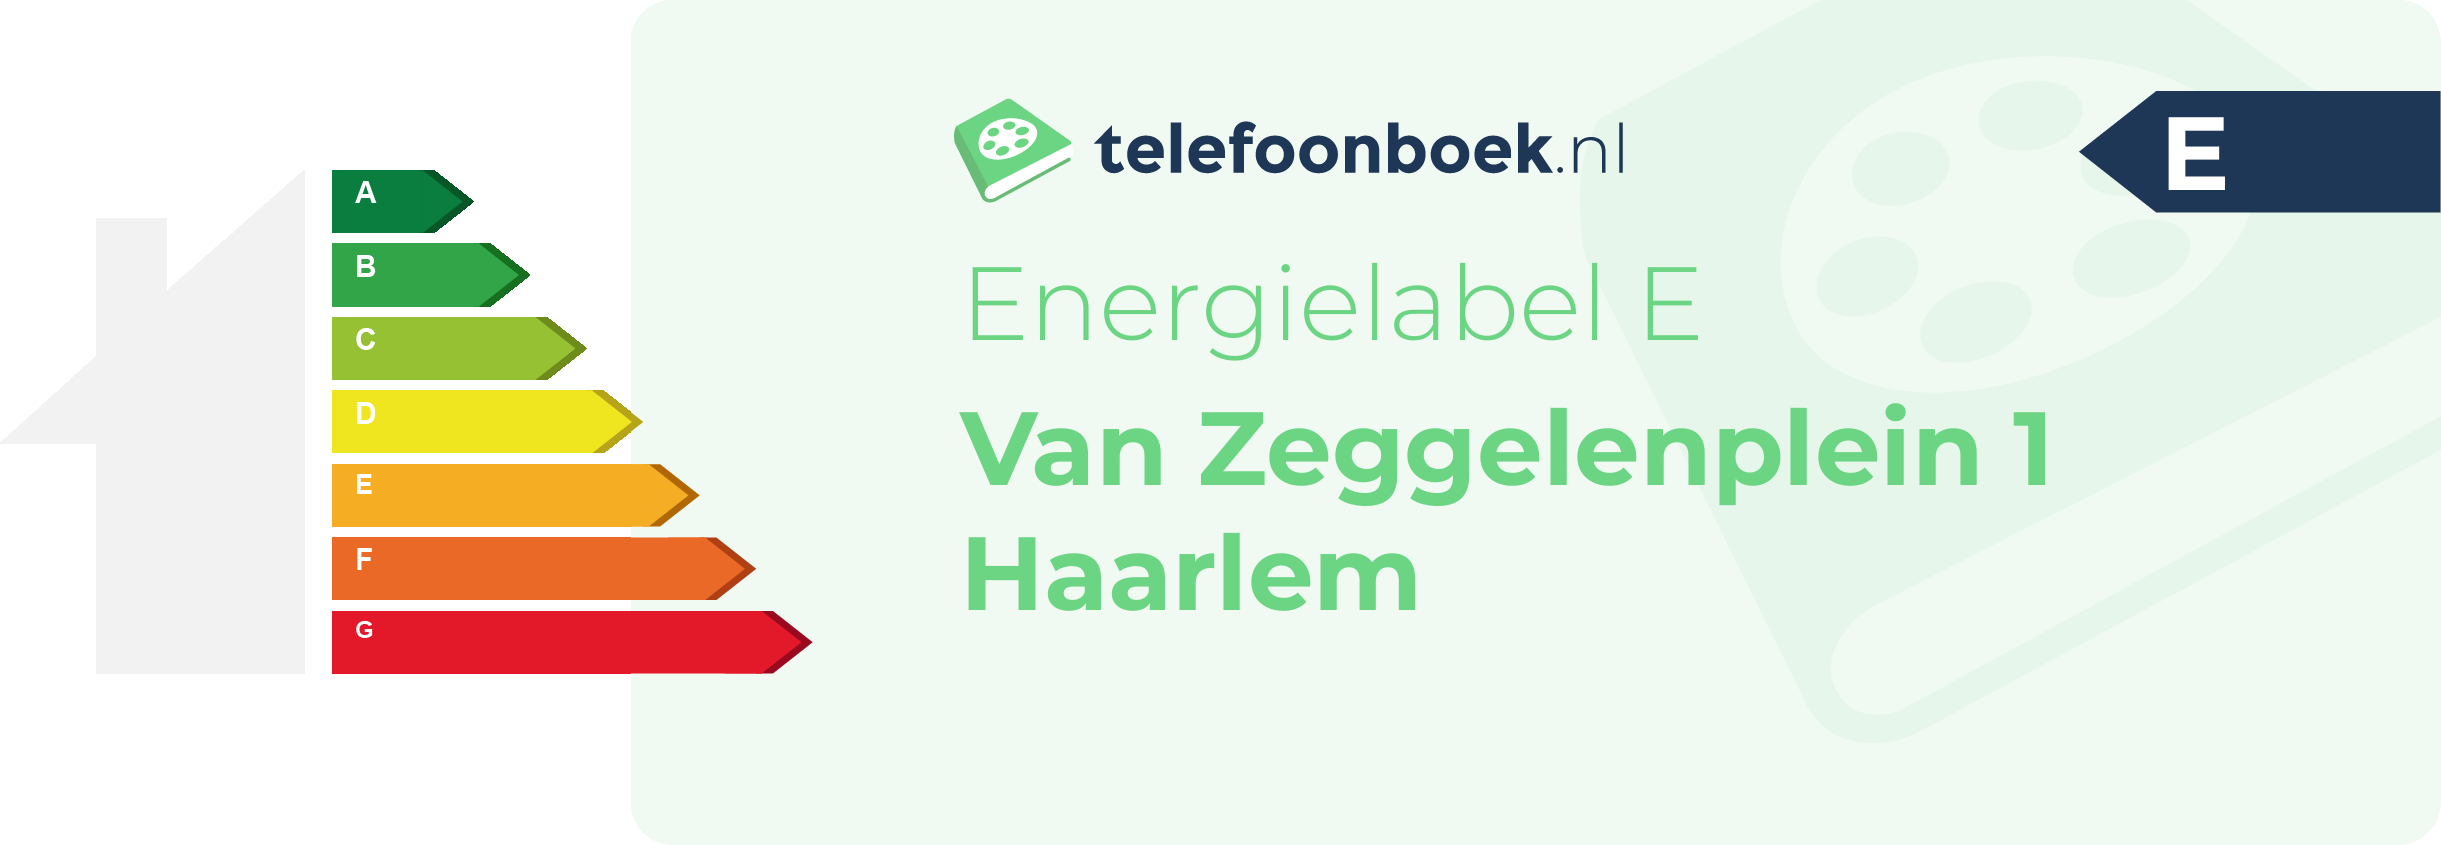 Energielabel Van Zeggelenplein 1 Haarlem